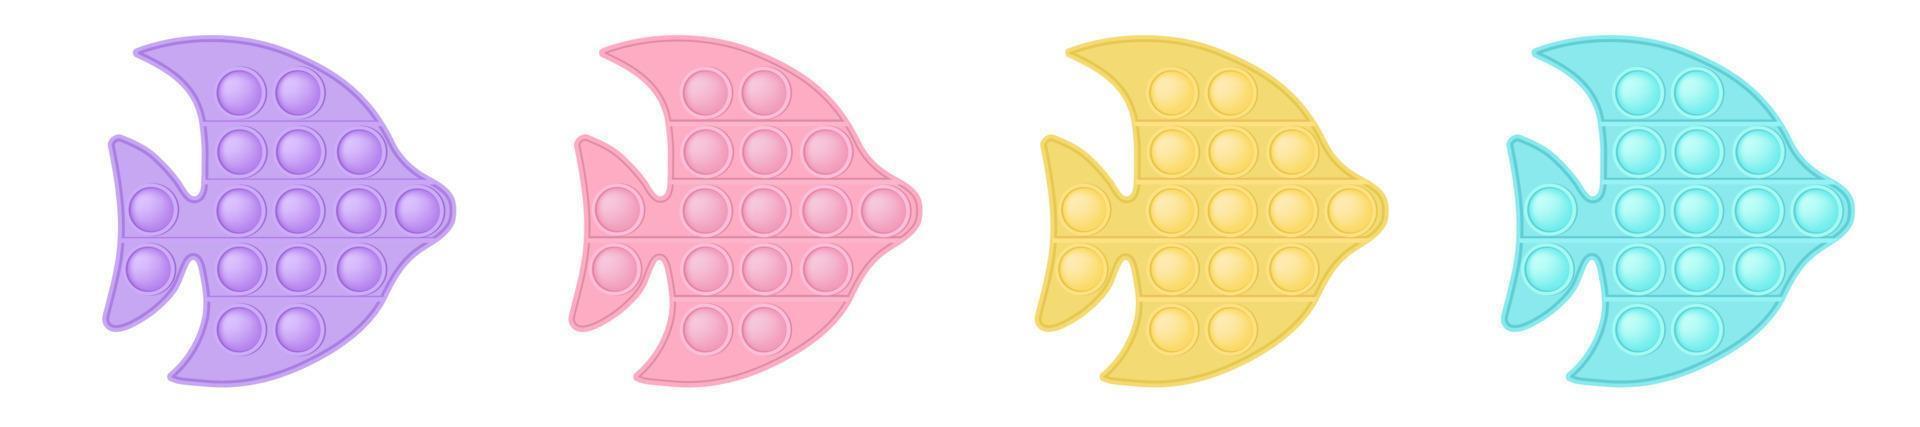 Knallende Spielzeugfische im Stil eines modischen Silikon-Fidget-Spielzeugs. süchtig machendes Spielzeug in Pastellfarben - Pink, Blau, Gelb, Lila. Blase sensorische Entwicklung für Kinderfinger. isoliert vektor